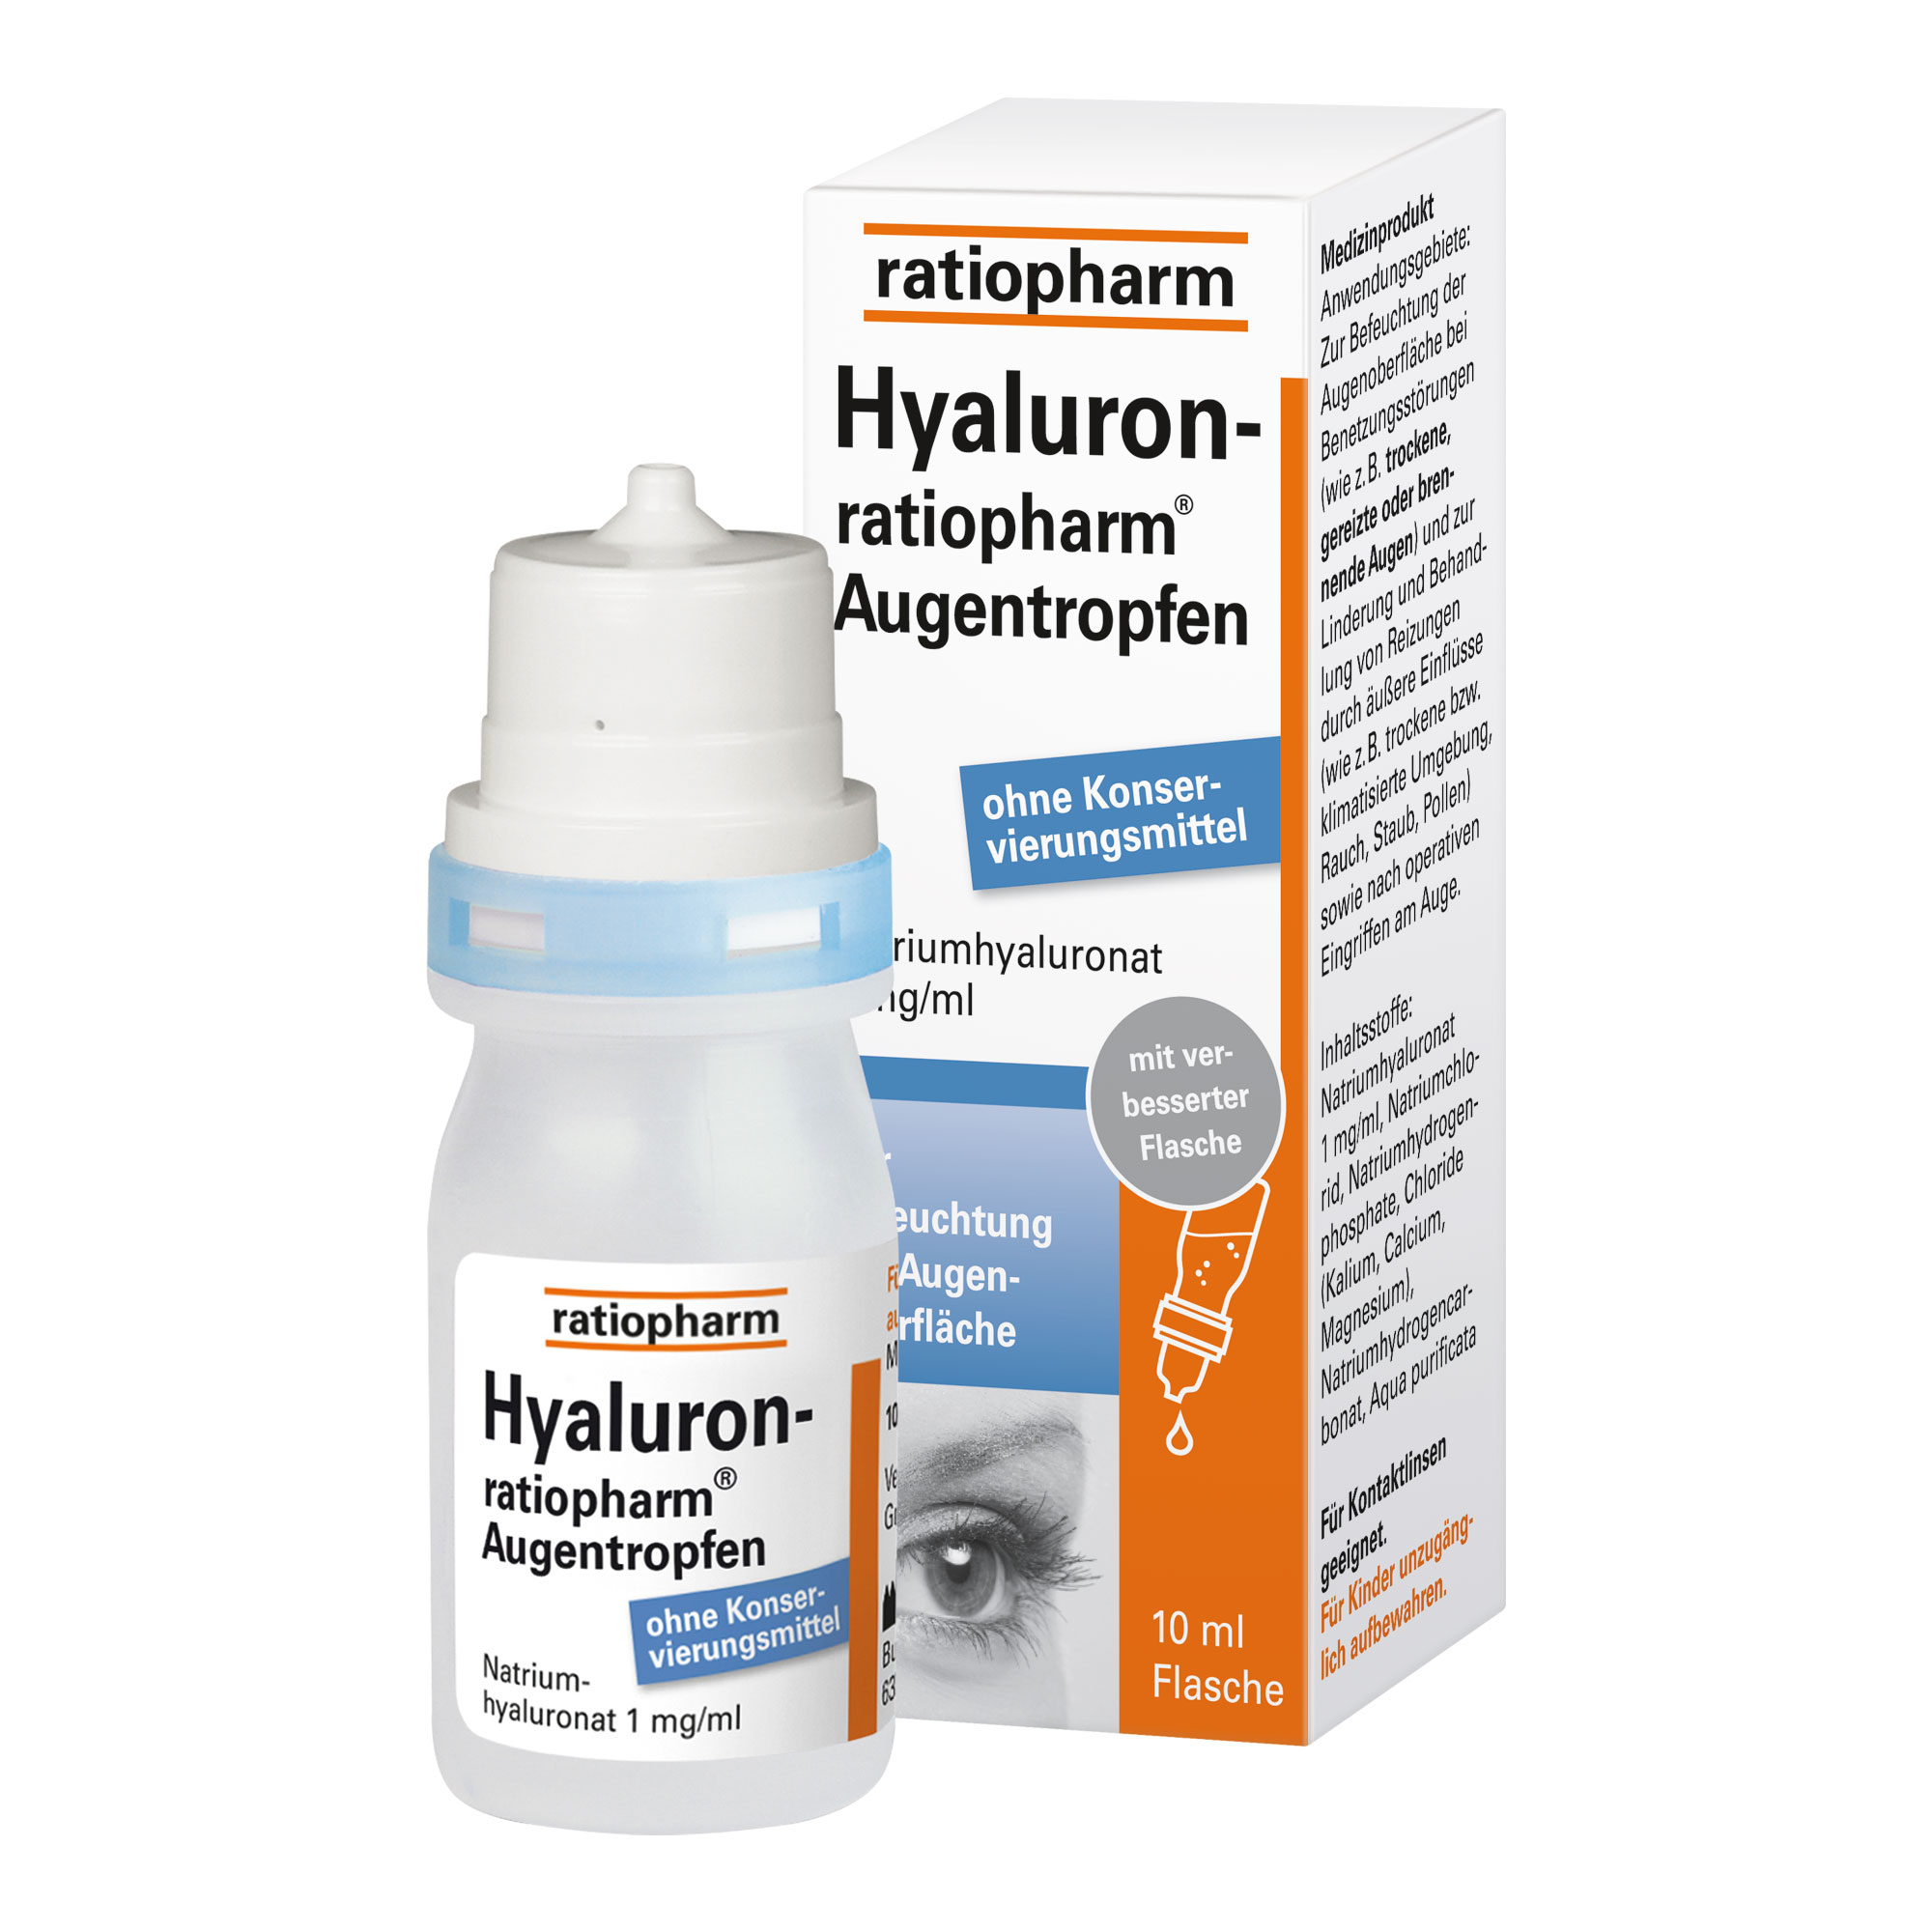 Feuchtigkeitsspendende Augentropfen zur Linderung von Trockenheit, Juckreiz und Brennen. Für Erwachsene, Kinder und auch Kontaktlinsenträger geeignet.